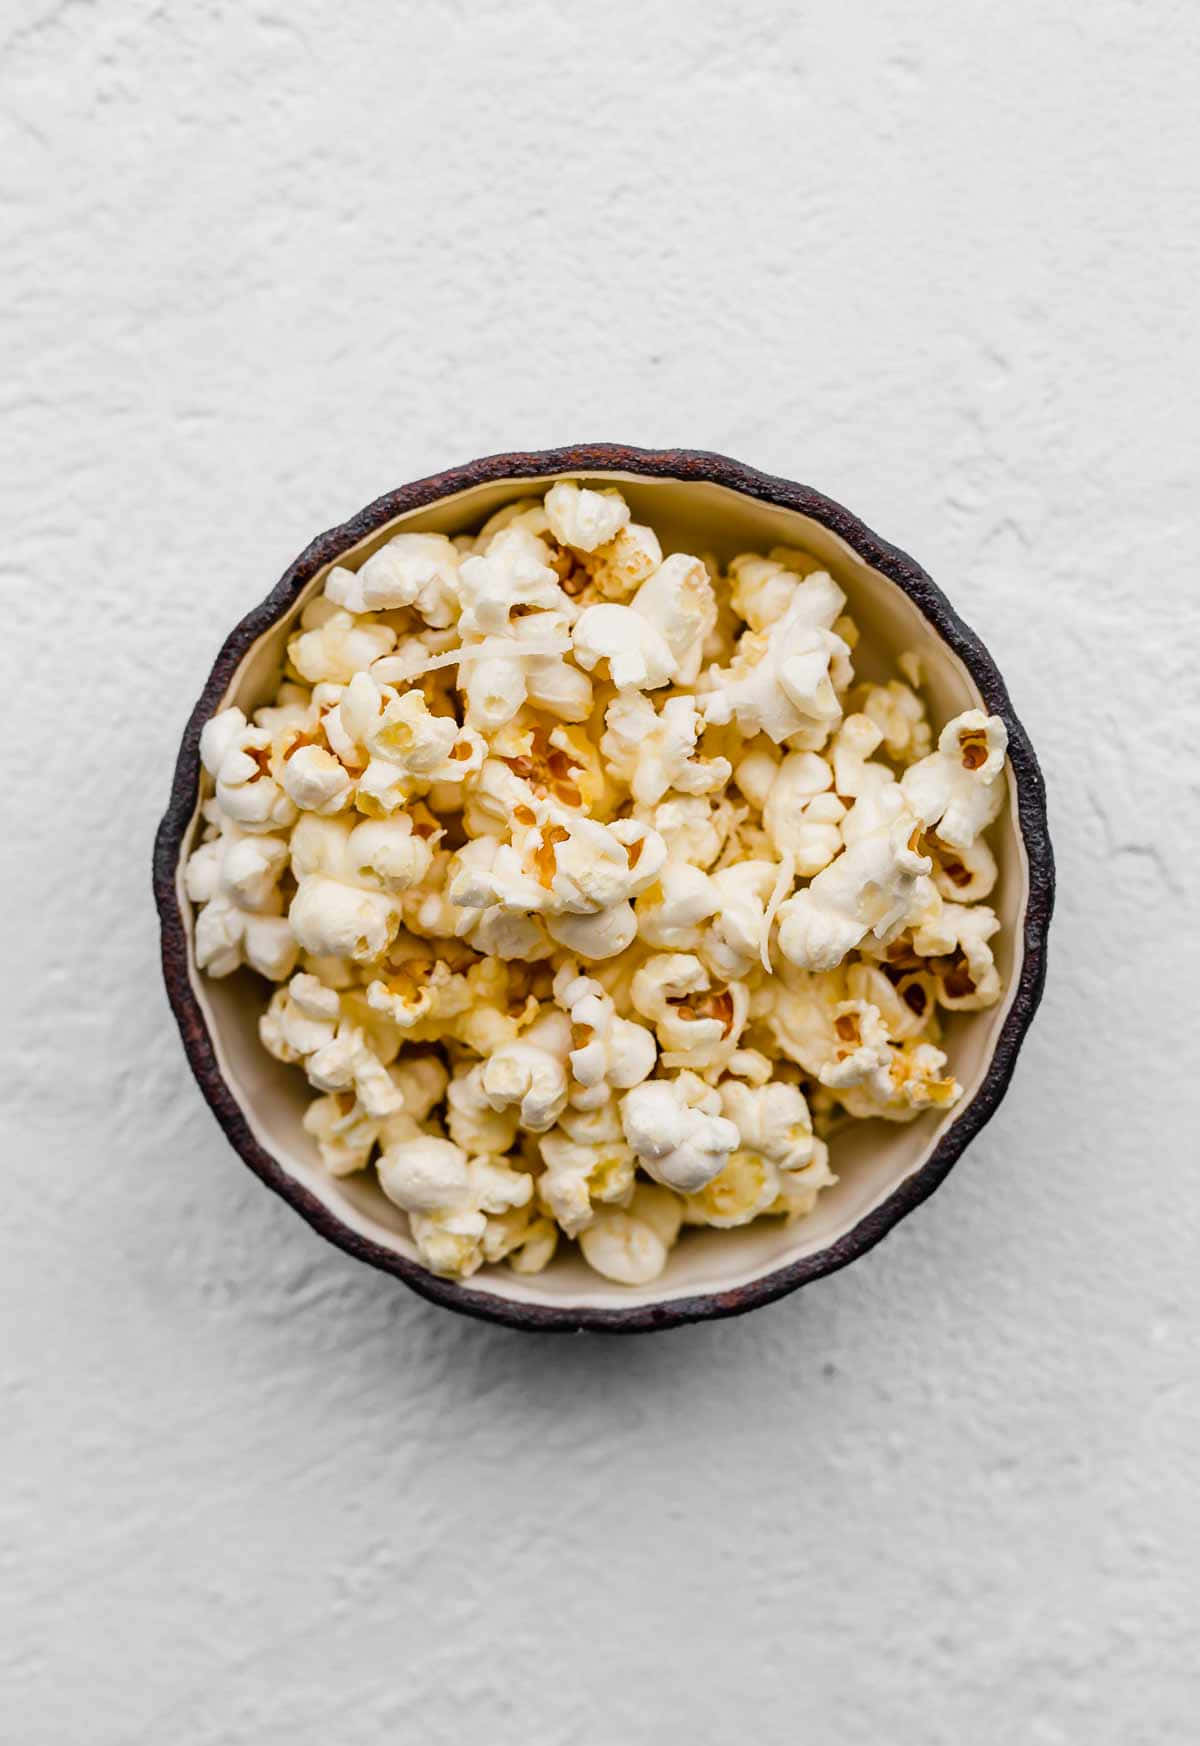 Unaciotola Di Popcorn Su Uno Sfondo Bianco